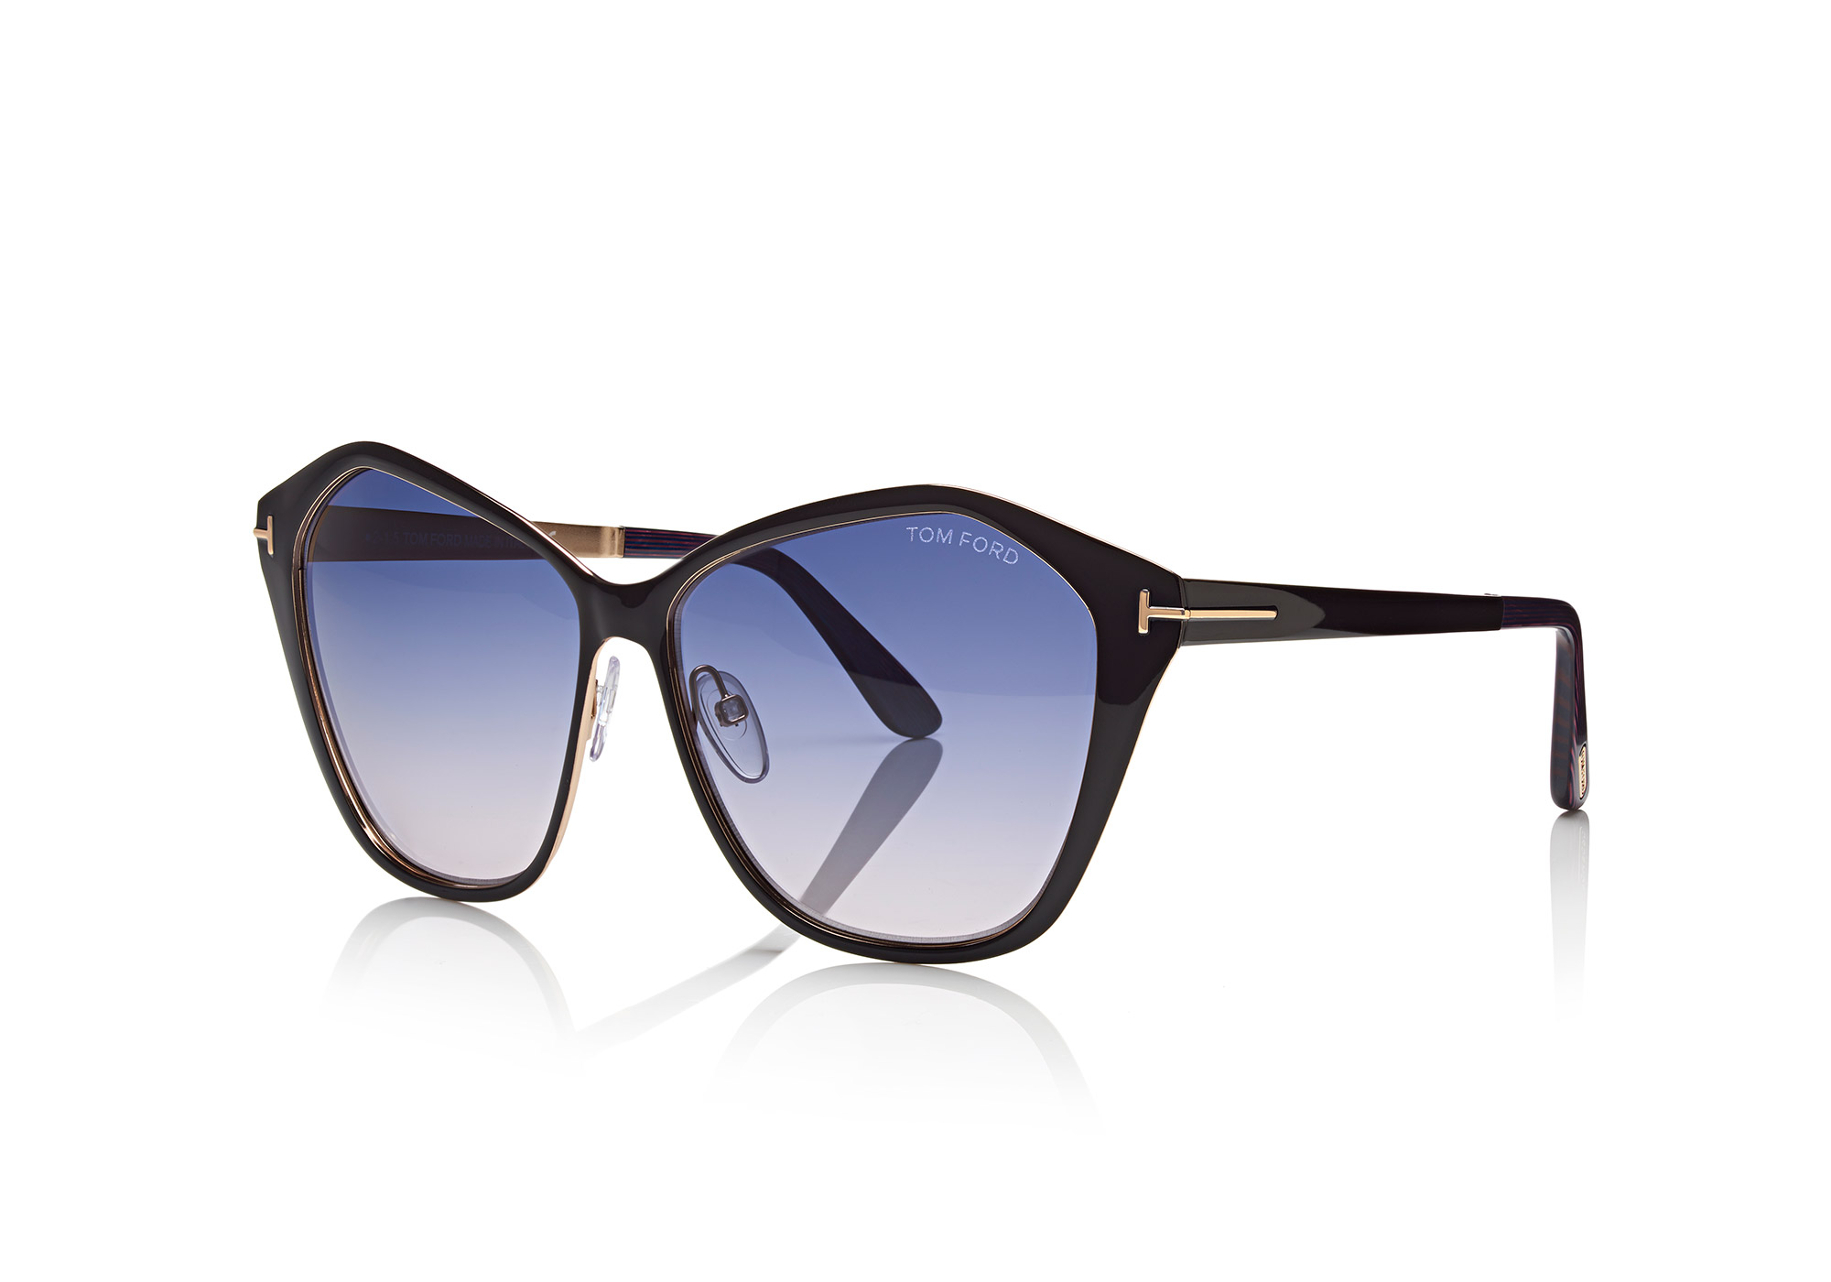 Marcolin Eyewear sunglasses Tom Ford FW 15 16 (1)